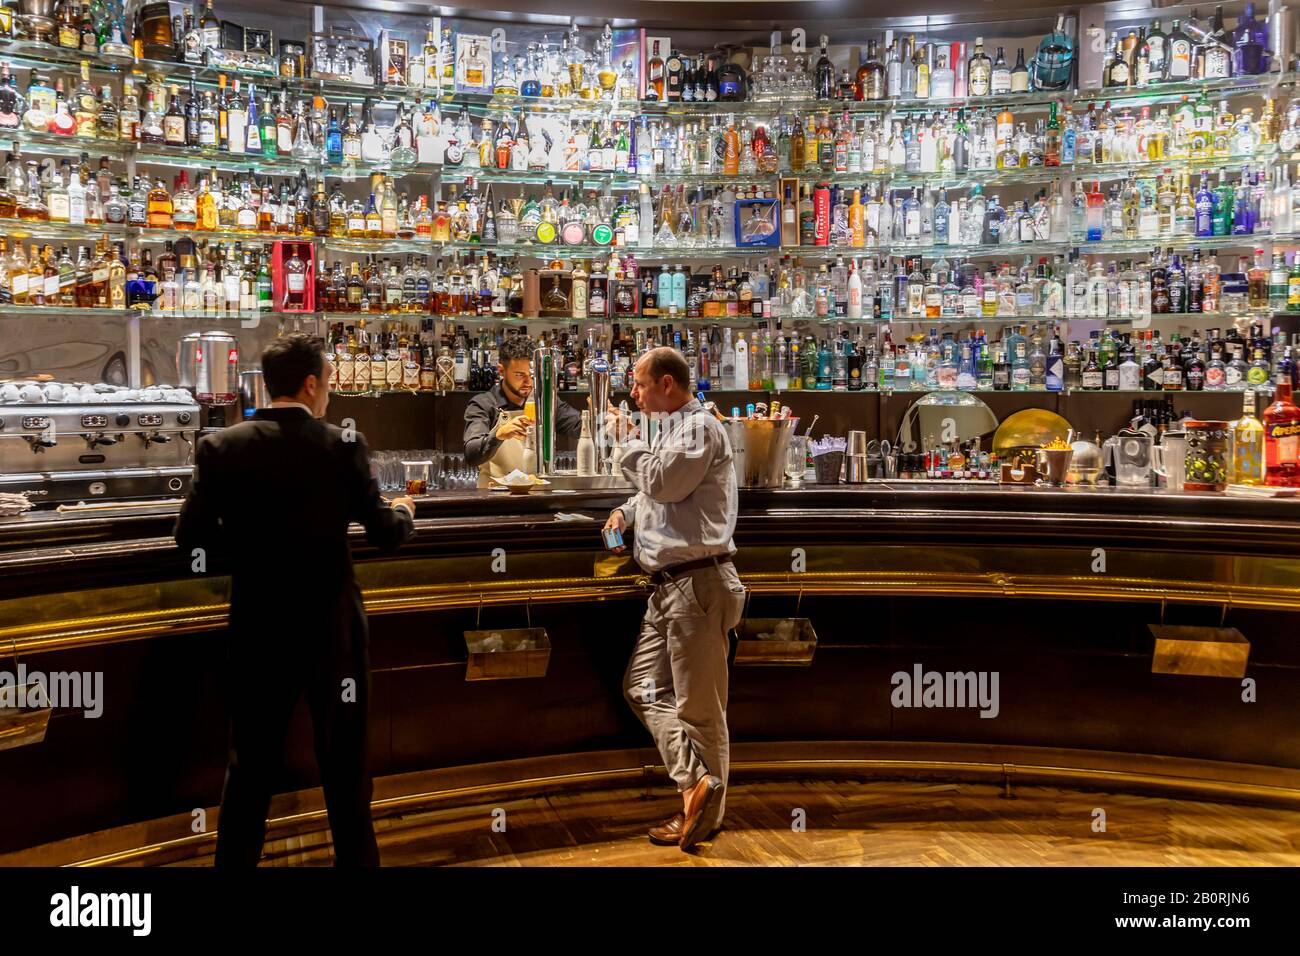 Bar at Circulo de Bellas Artes, Calle de Alcala, nightlife, Madrid, Spain Stock Photo